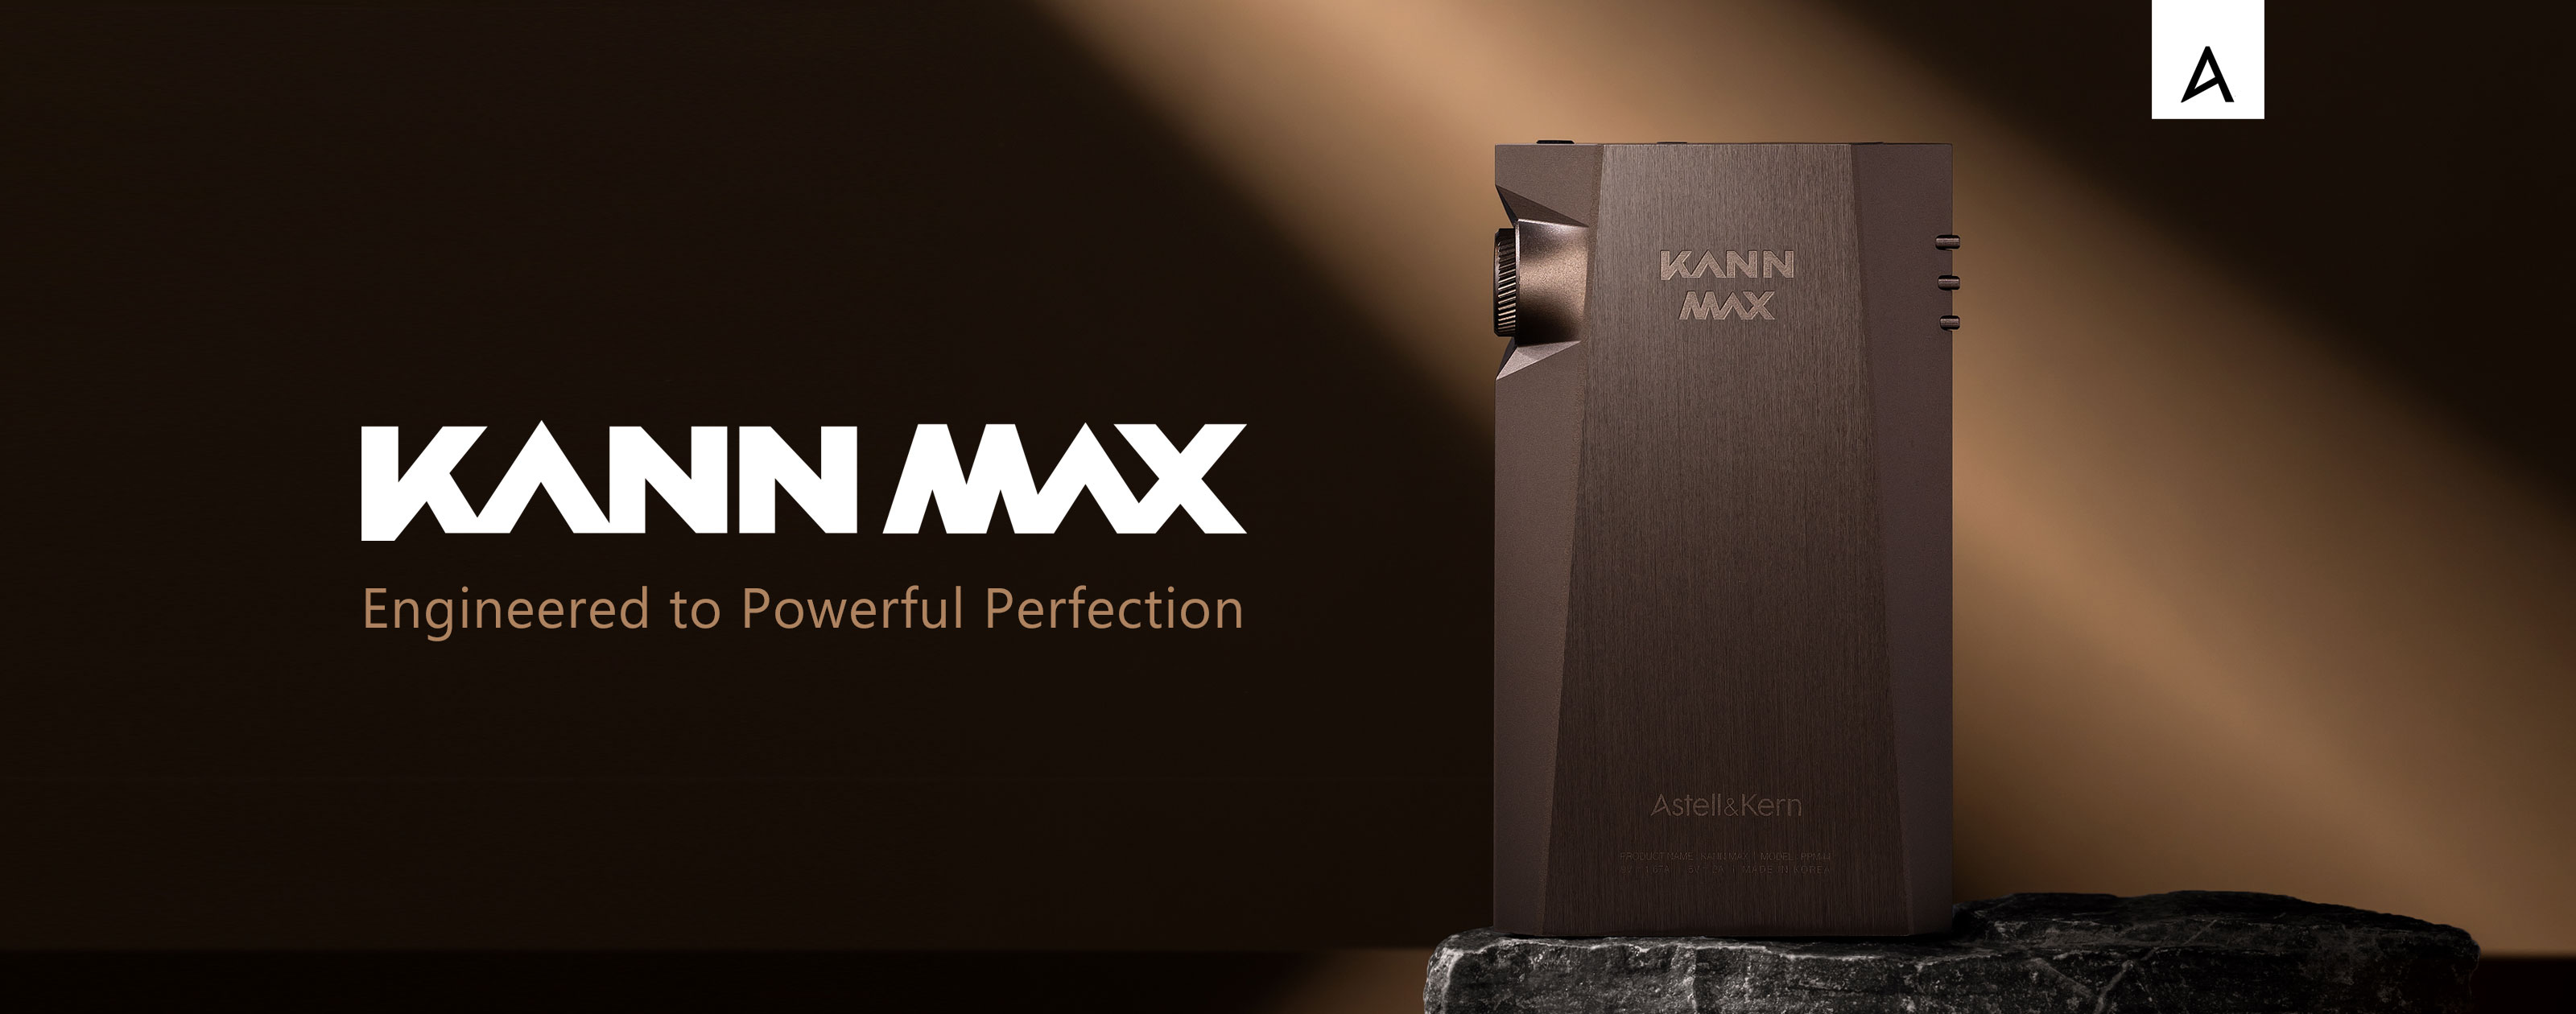 世界限定生産1000台のKANN MAXリミテッドカラー『KANN MAX Brown Mud